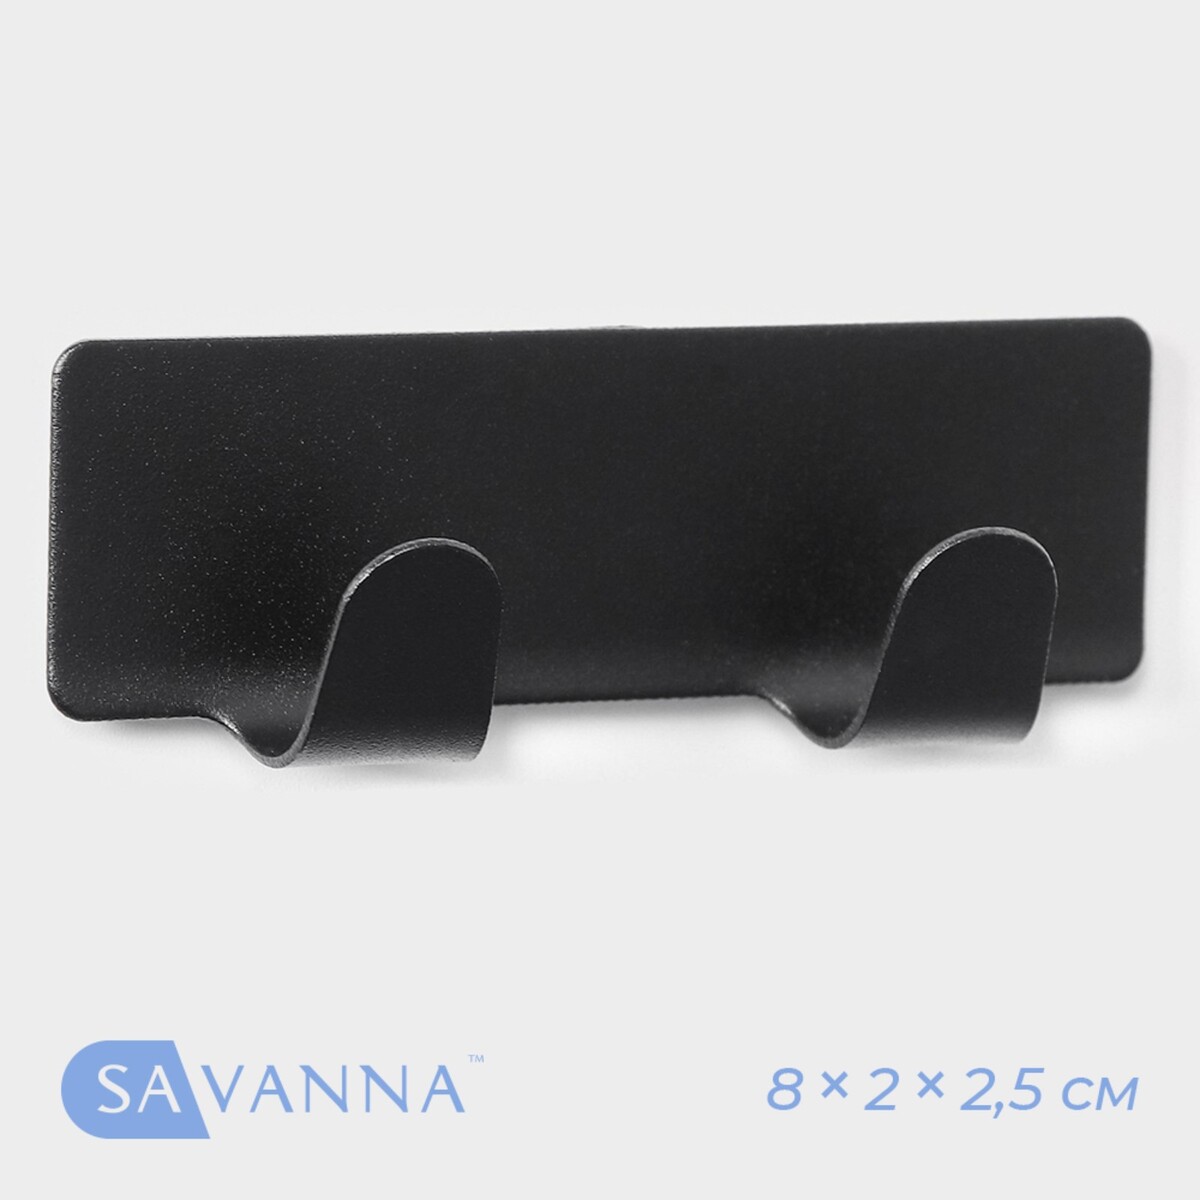 Планка самоклеящаяся металлическая savanna black loft plane, на 2 крючка, 8×2×2,5 см, цвет серебряный планка ответная sp 2r 09